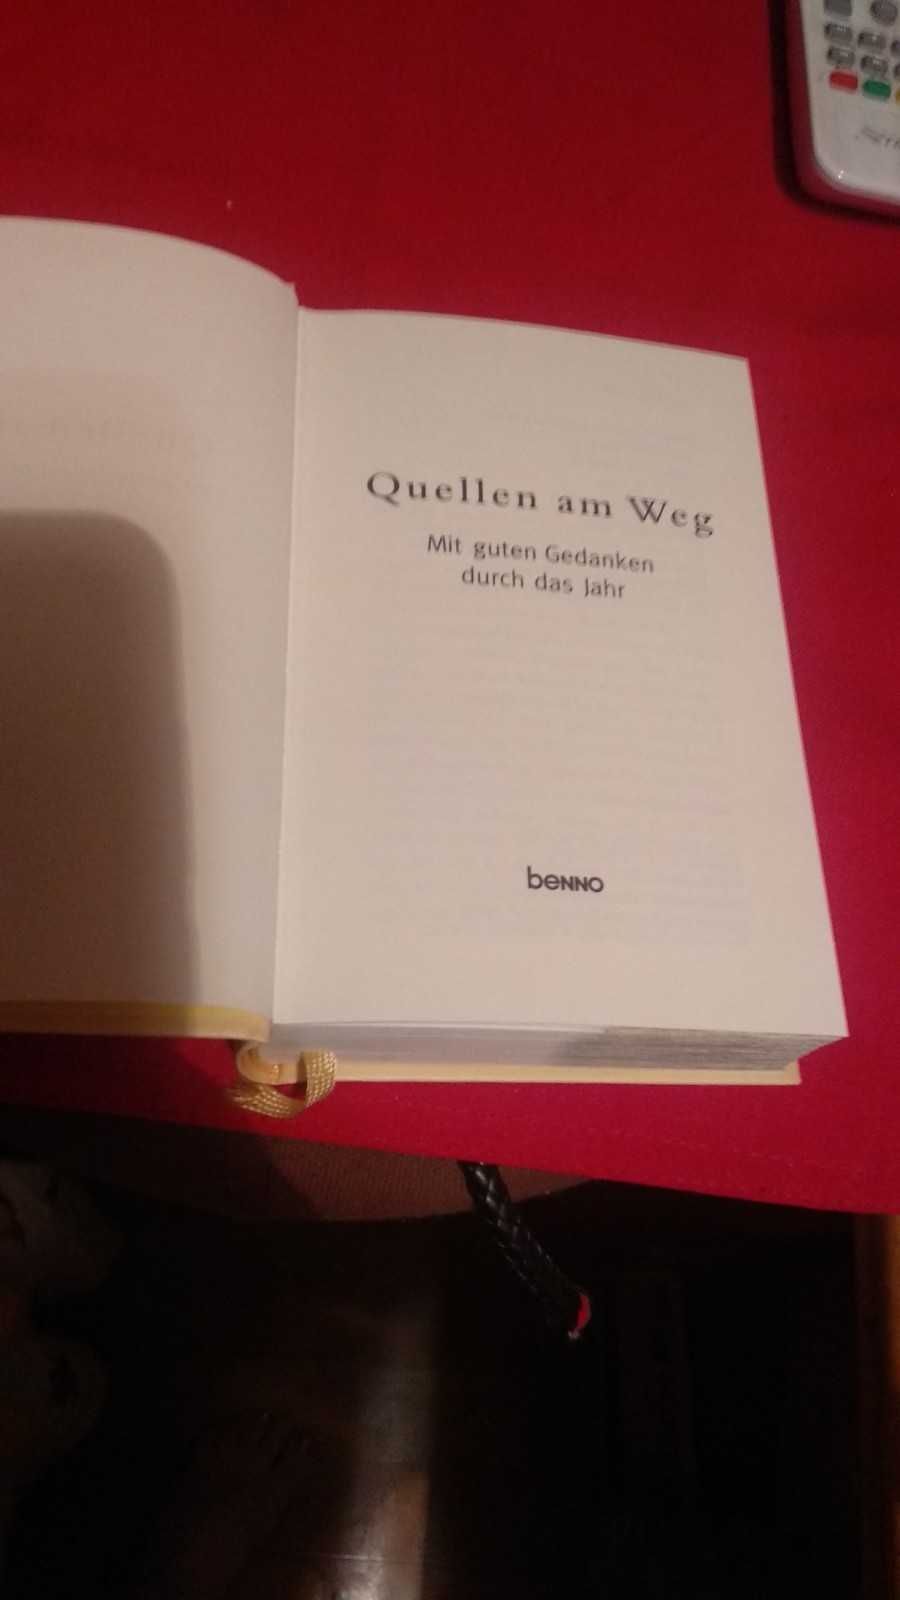 книга немецкий Quellen am Weg Mit guten Gedanken durch das Jahr benno